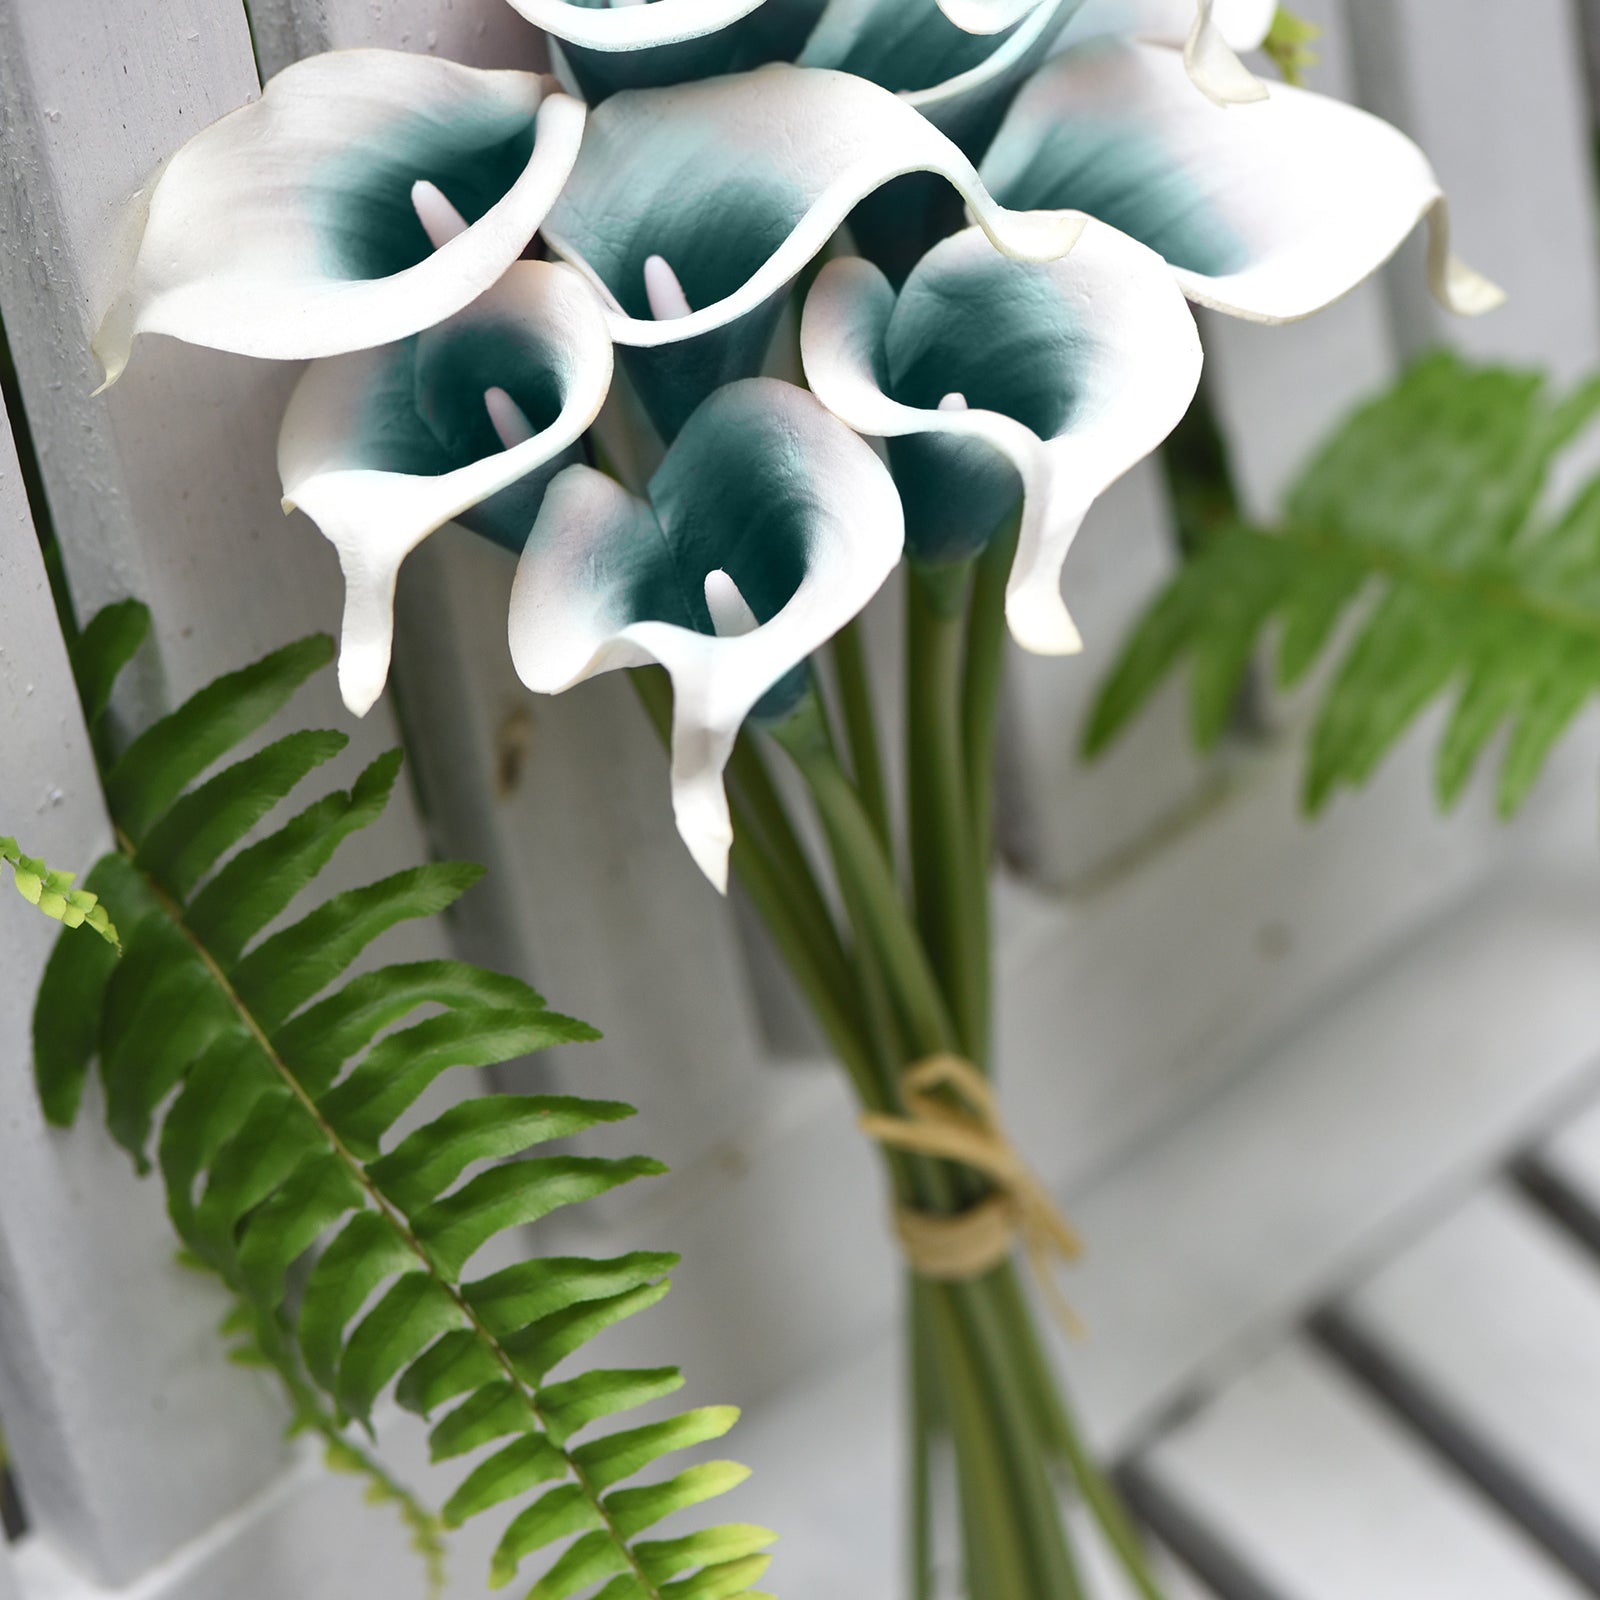 Deep Ocean Real Touch Calla Lilies Artificial Flower Bouquet 10 Stems